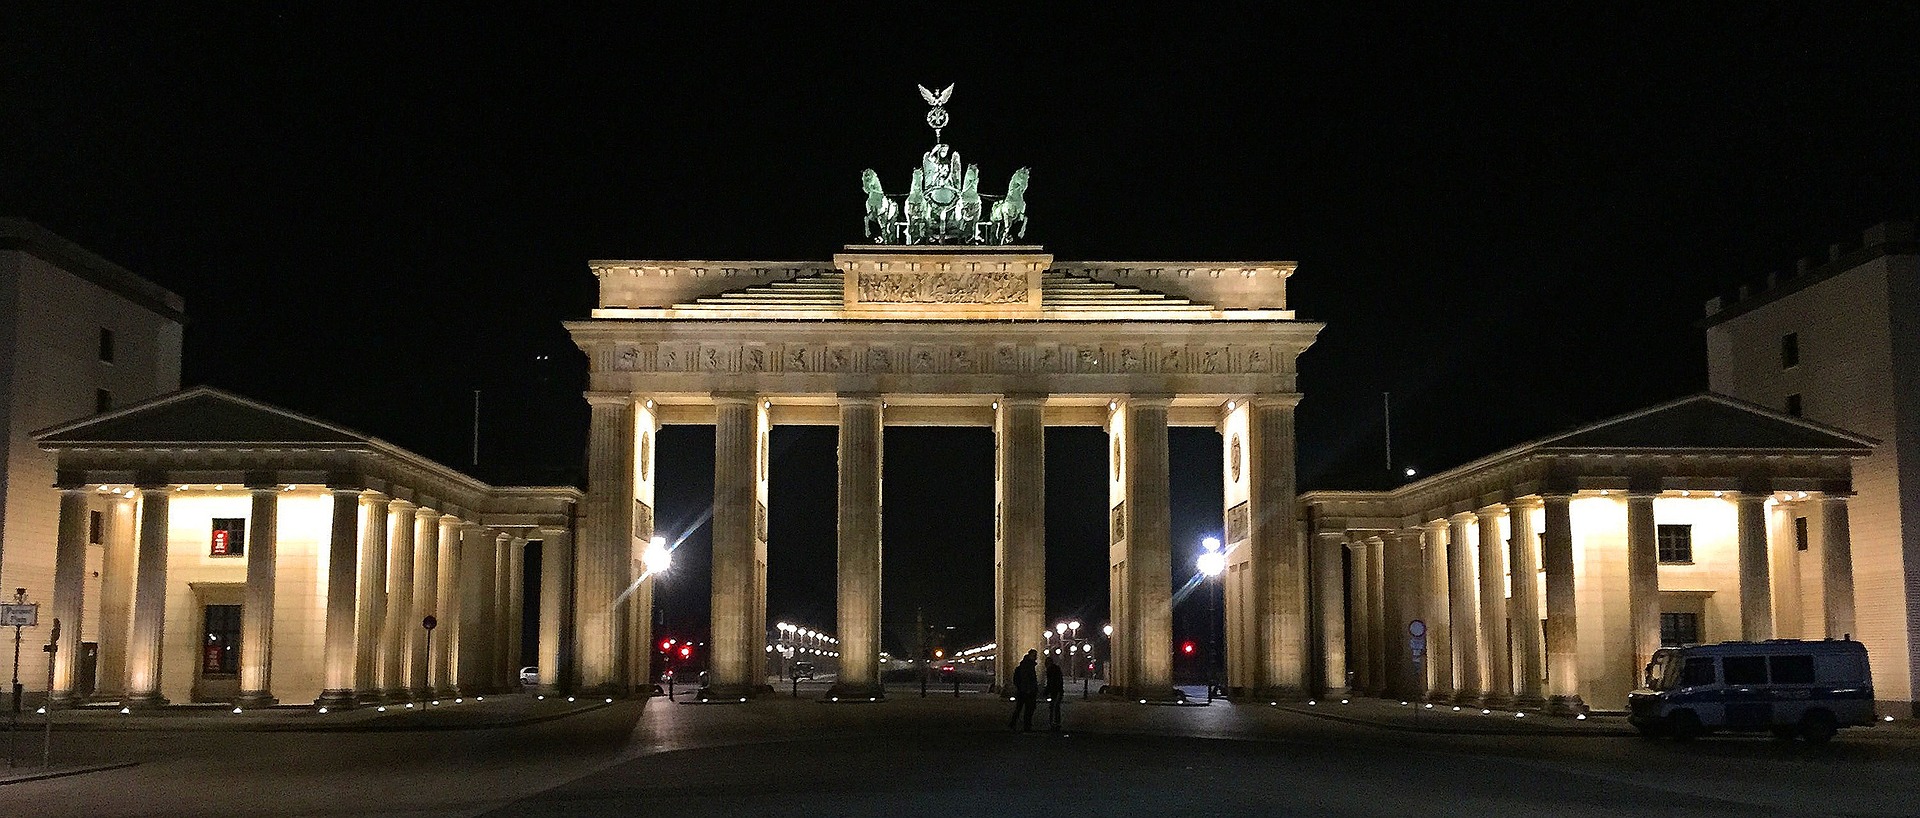 Бранденбургские ворота - символ Берлина.